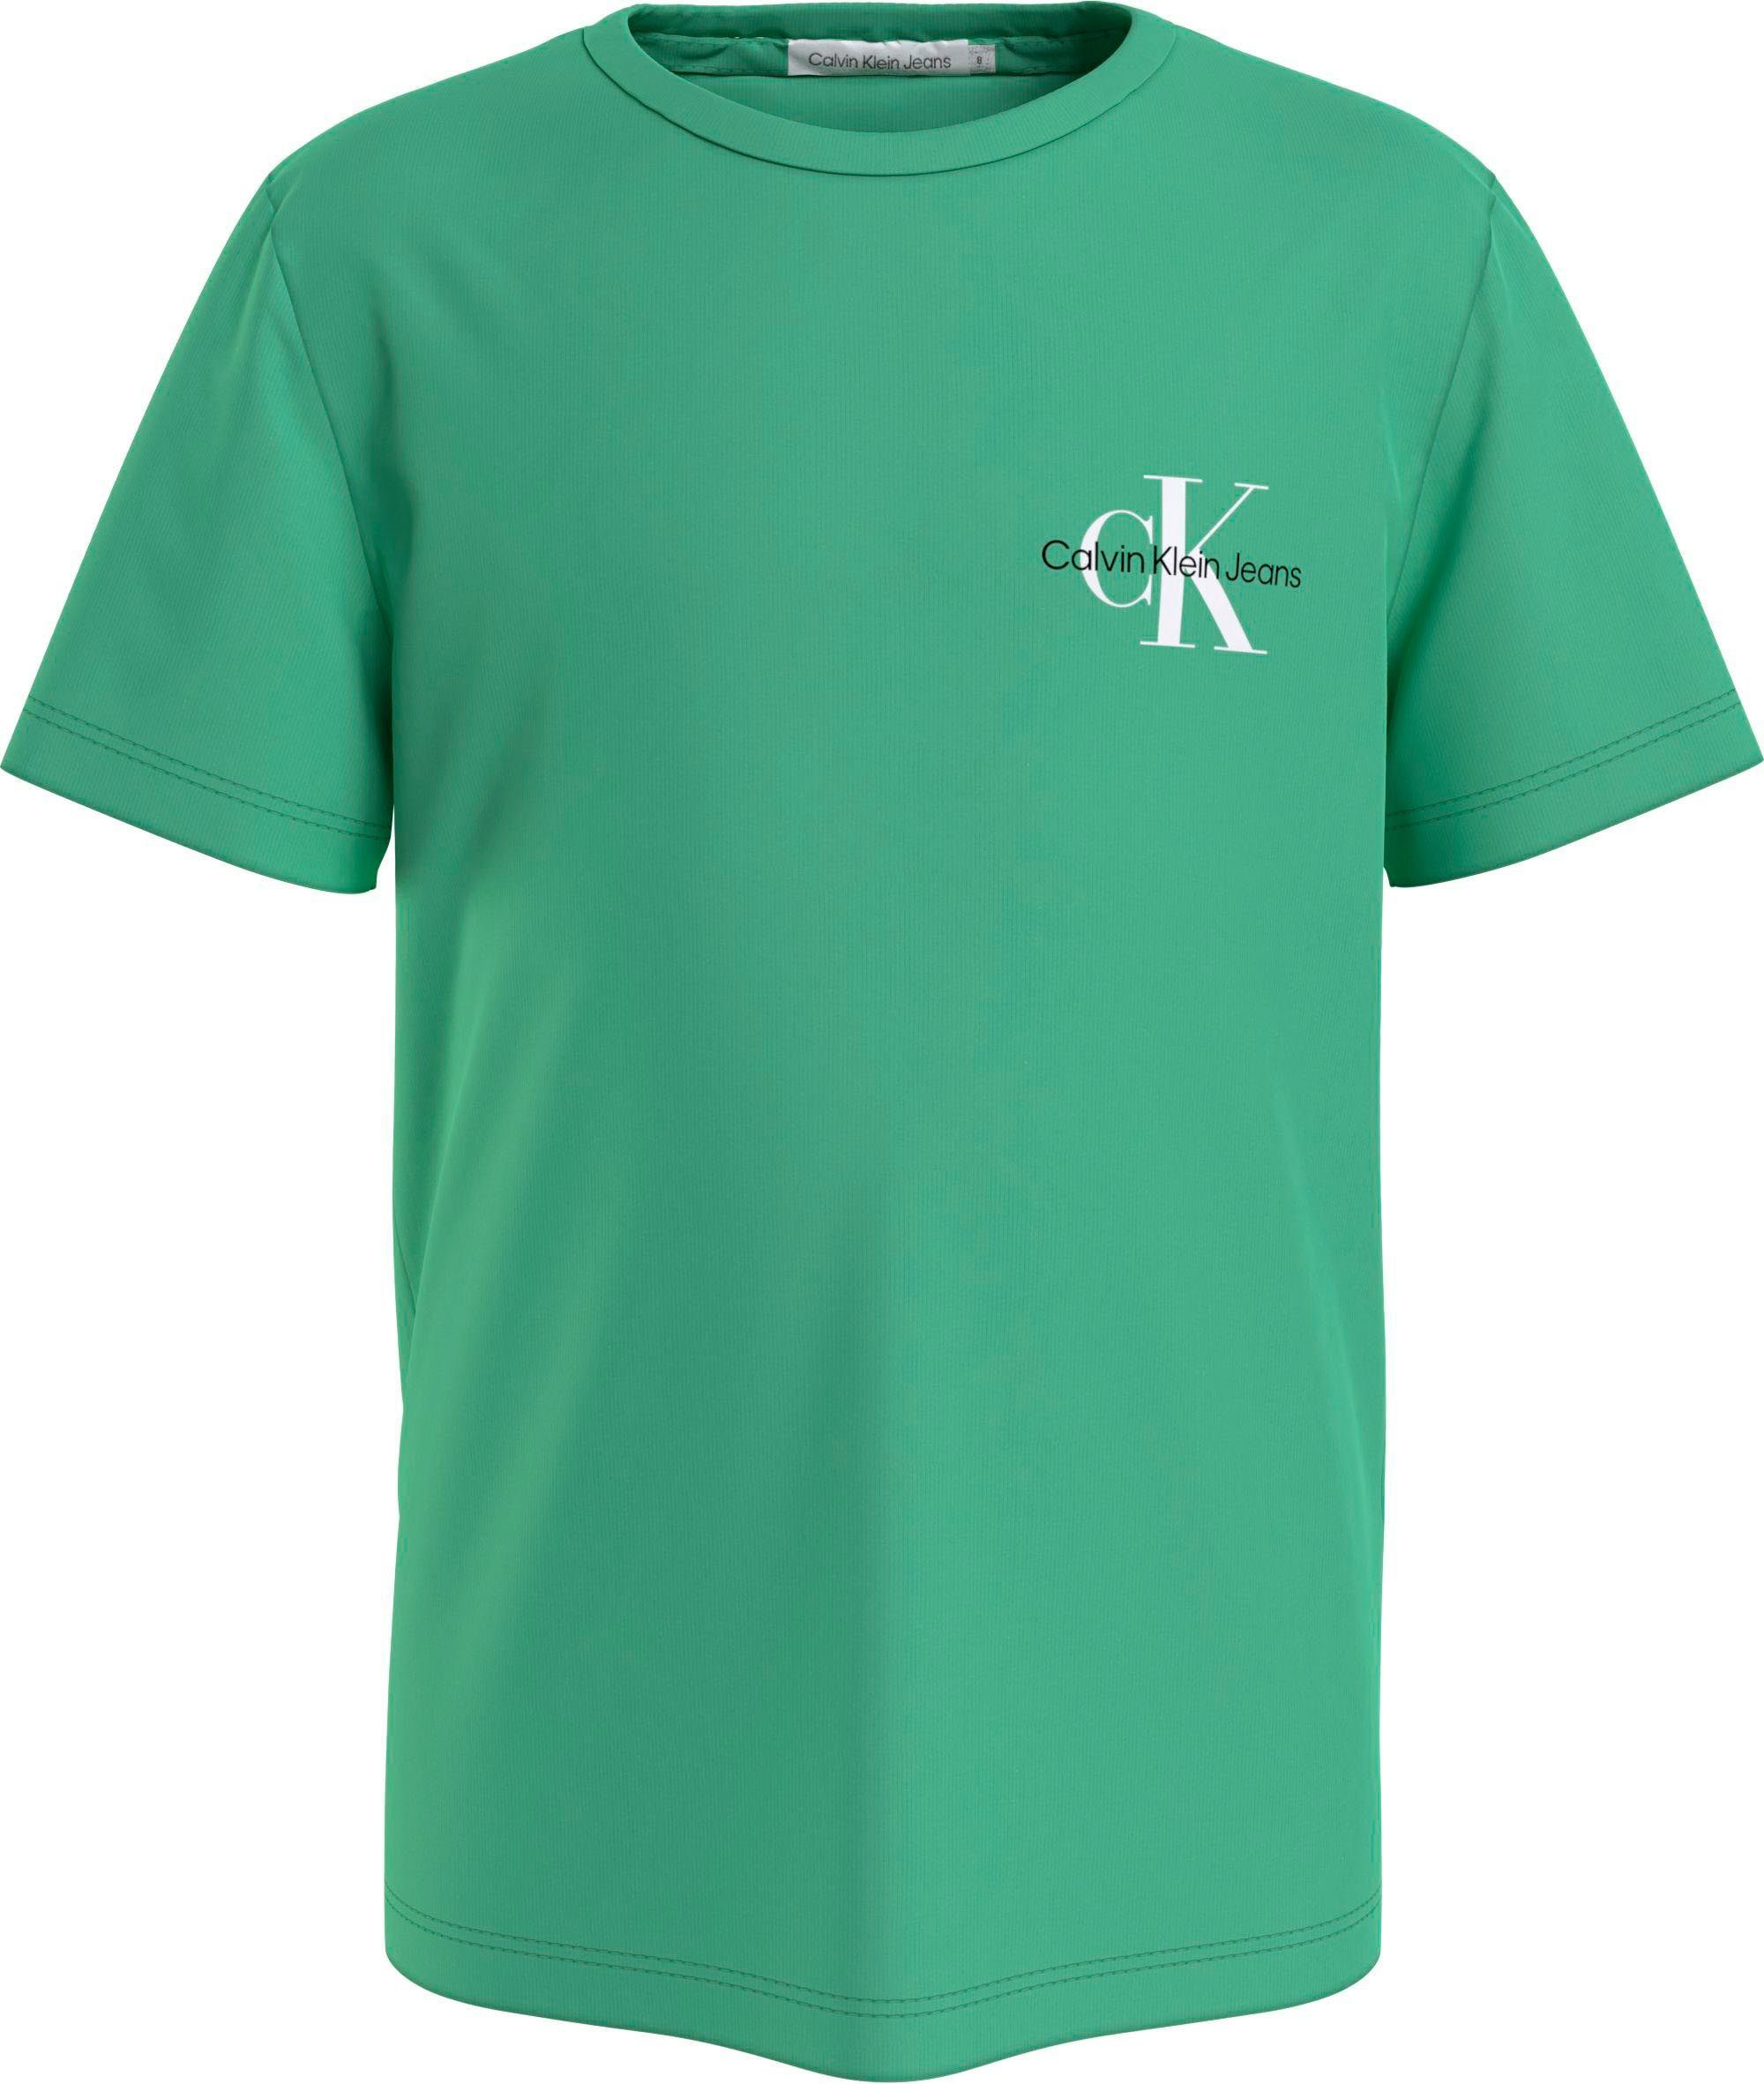 Calvin Klein Jeans grün T-Shirt mit Rundhalsausschnitt